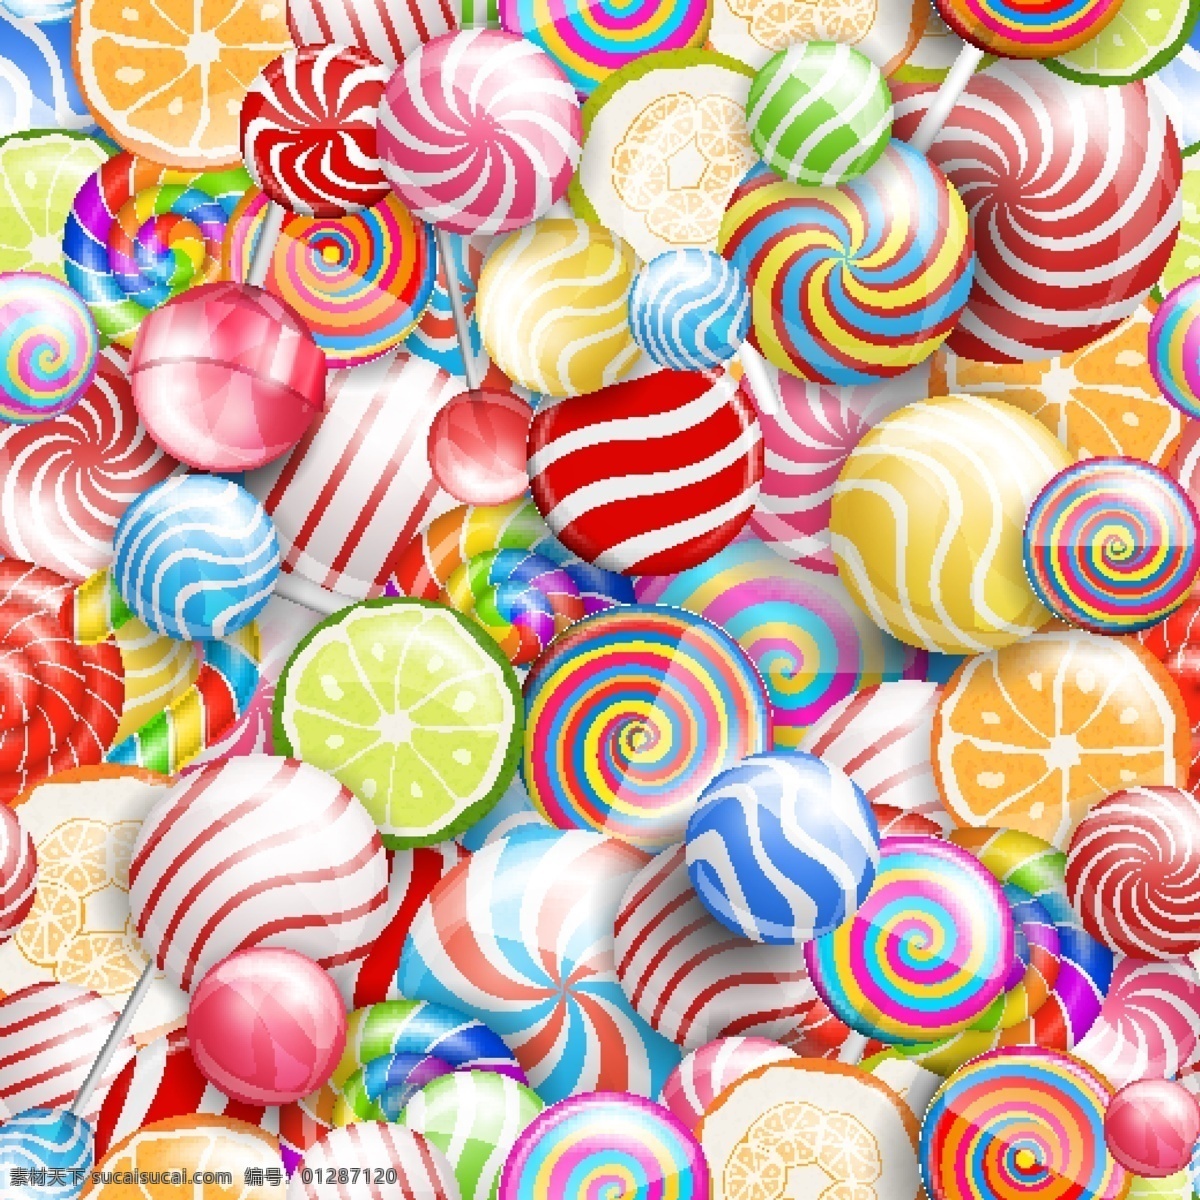 糖果 背景图片 分层 糖果背景图片 矢量棒棒糖 甜品 包装设计 模板 创意 刀版 eps分层 矢量素材 卡通设计